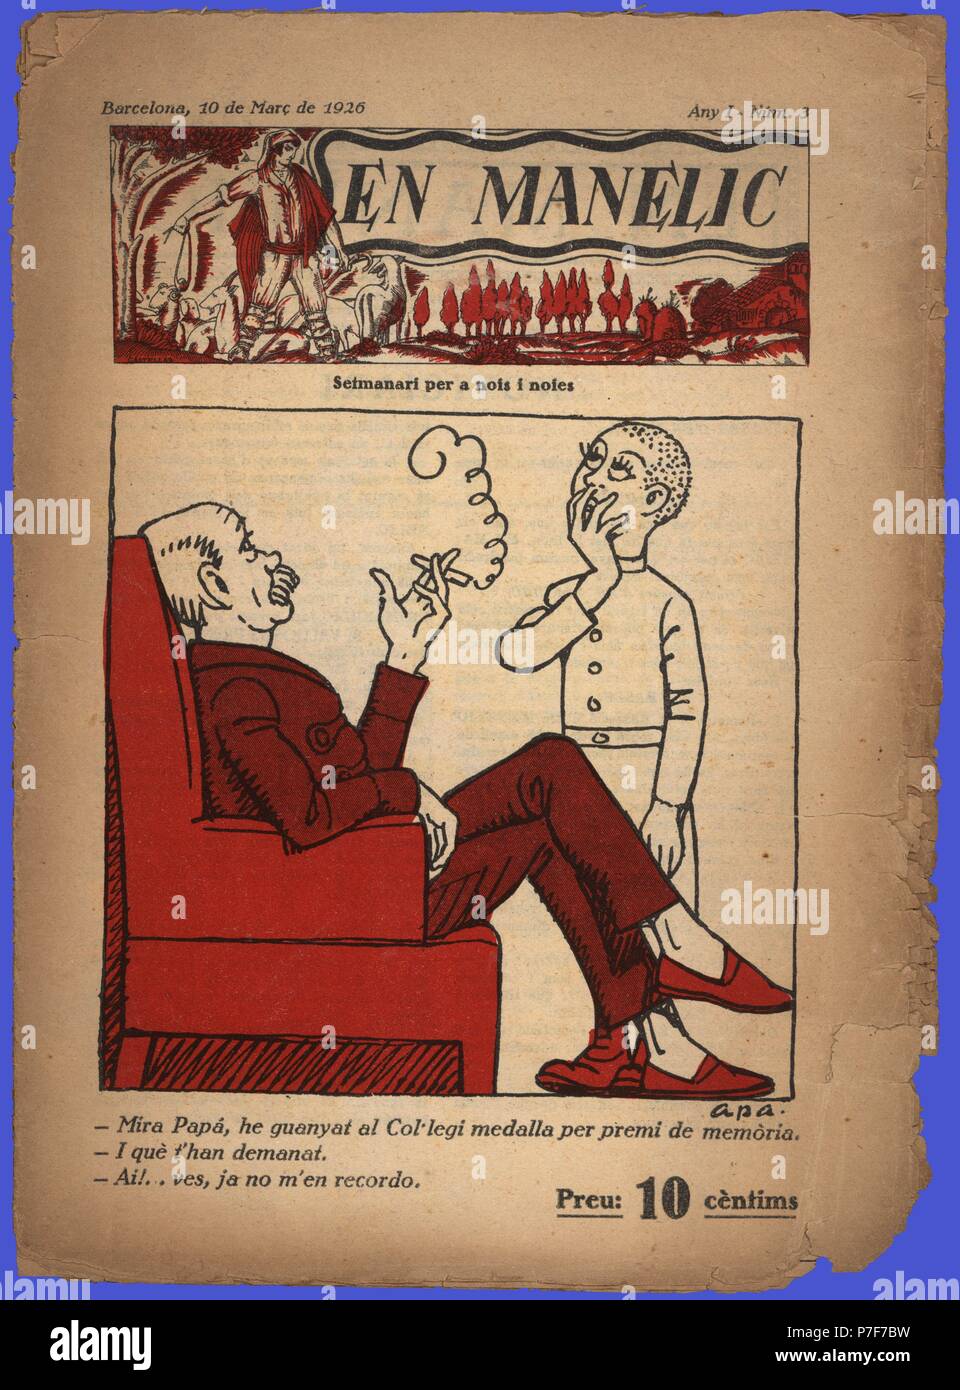 Portada del semanario de humor para jóvenes En Manelic, dibujada por Apa. Barcelona, marzo de 1926. Stock Photo